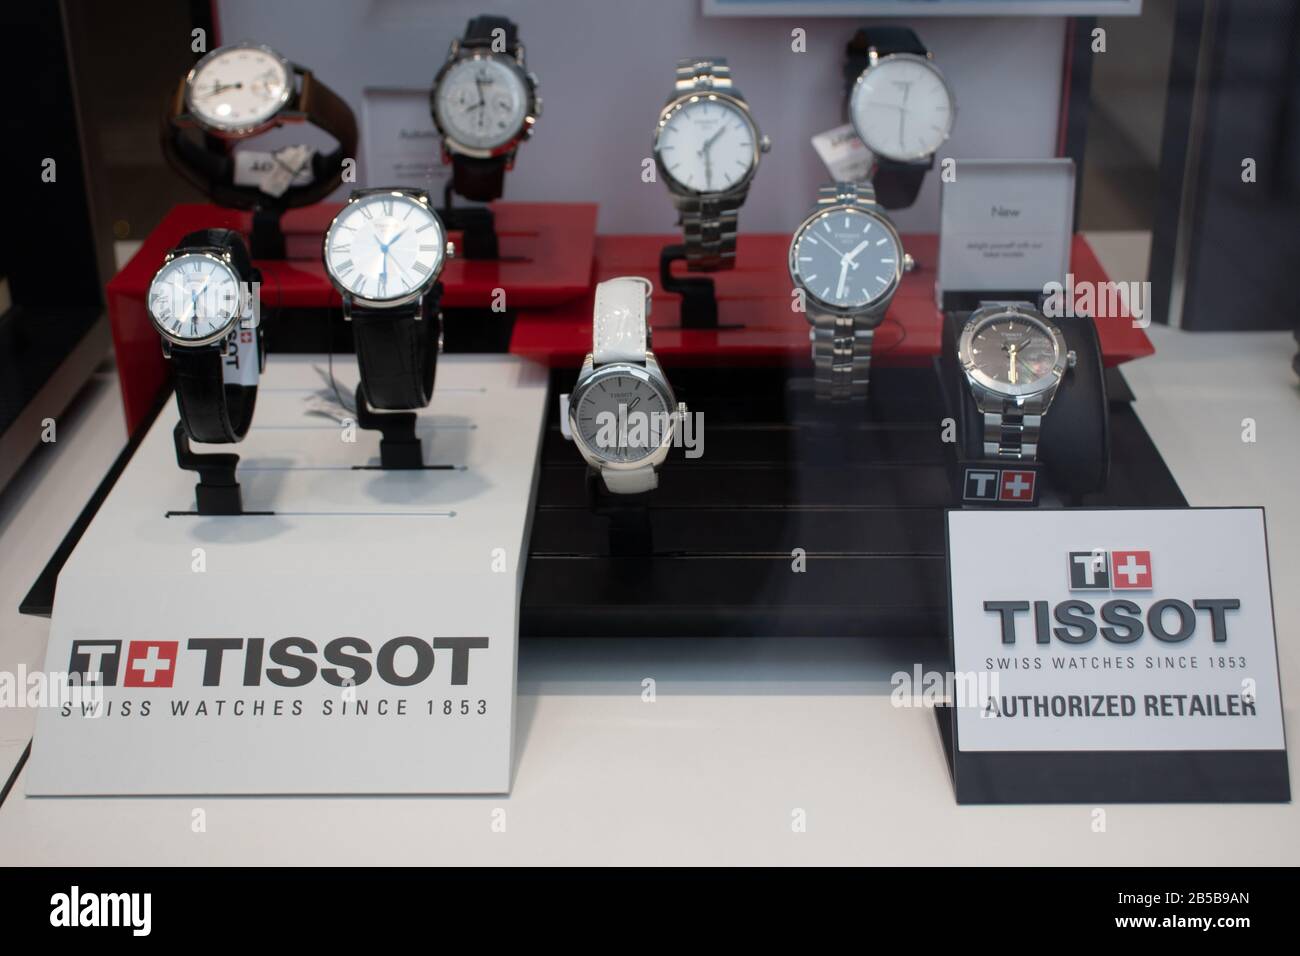 Helsinki, Finlande - 3 mars 2020 : montre Tissot en magasin, éditorial illustratif Banque D'Images